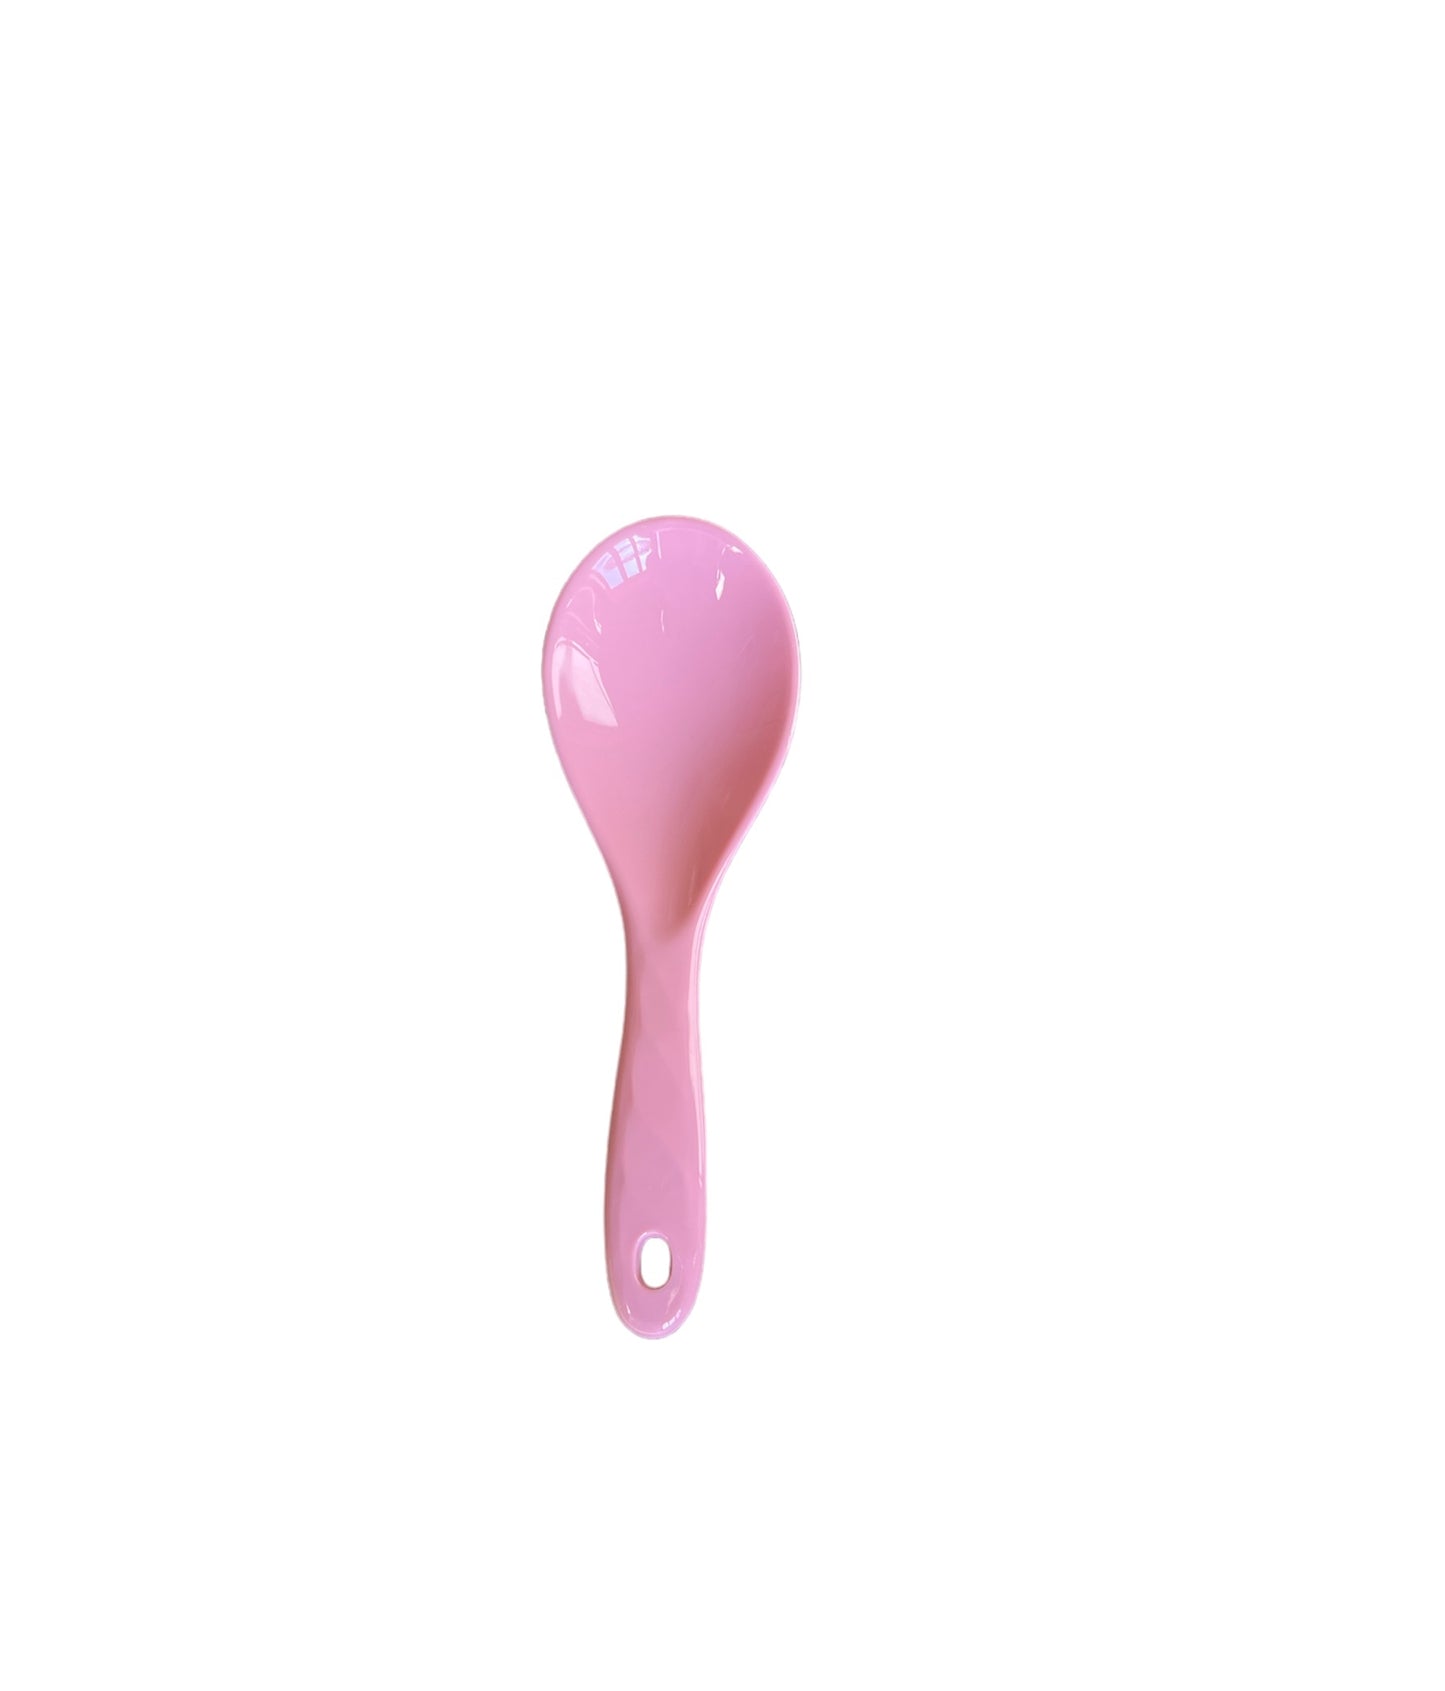 Rice cucchiaio insalata rosa tenue